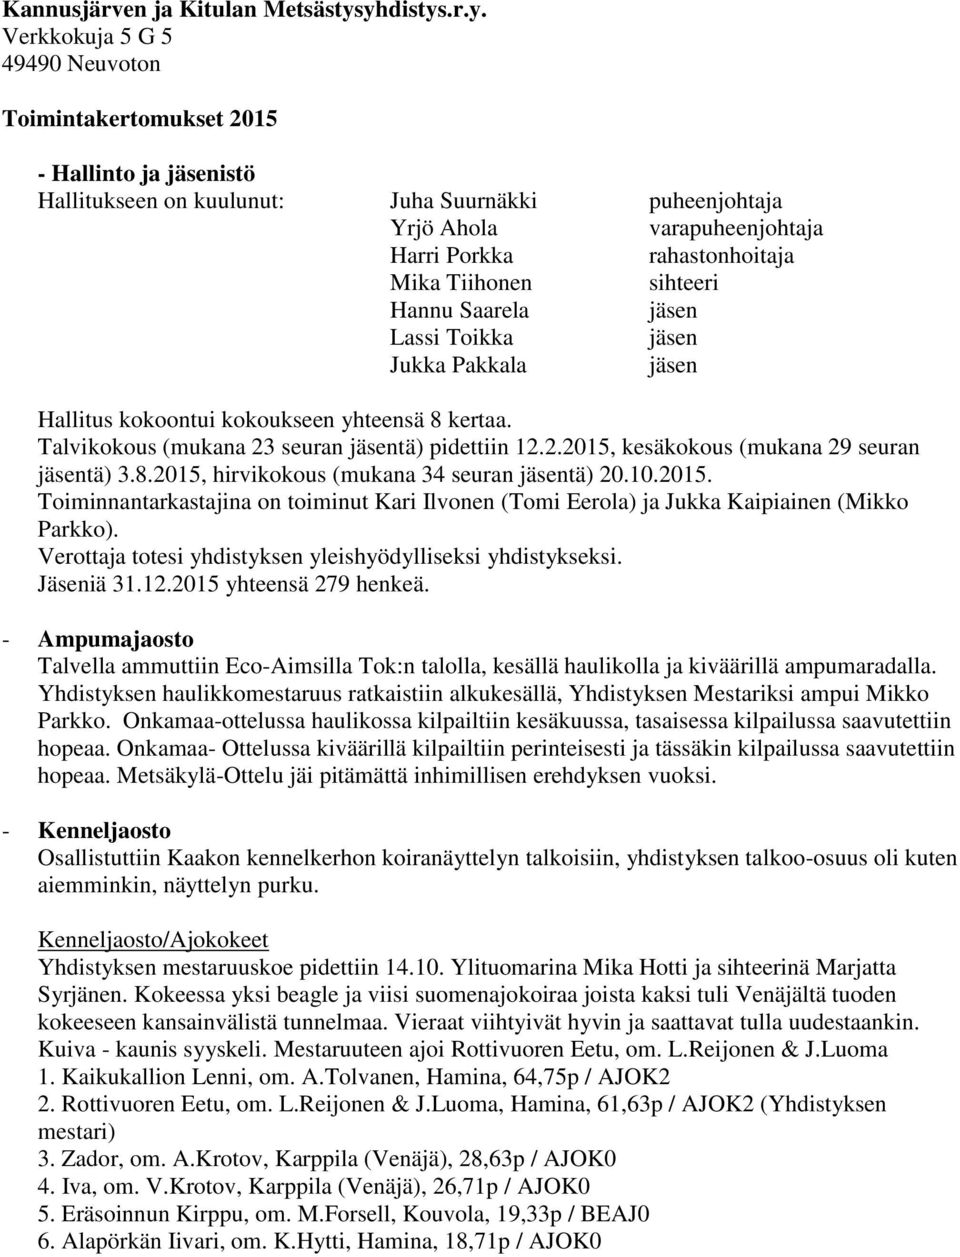 rahastonhoitaja Mika Tiihonen sihteeri Hannu Saarela Lassi Toikka Jukka Pakkala Hallitus kokoontui kokoukseen yhteensä 8 kertaa. Talvikokous (mukana 23 seuran tä) pidettiin 12.2.2015, kesäkokous (mukana 29 seuran tä) 3.